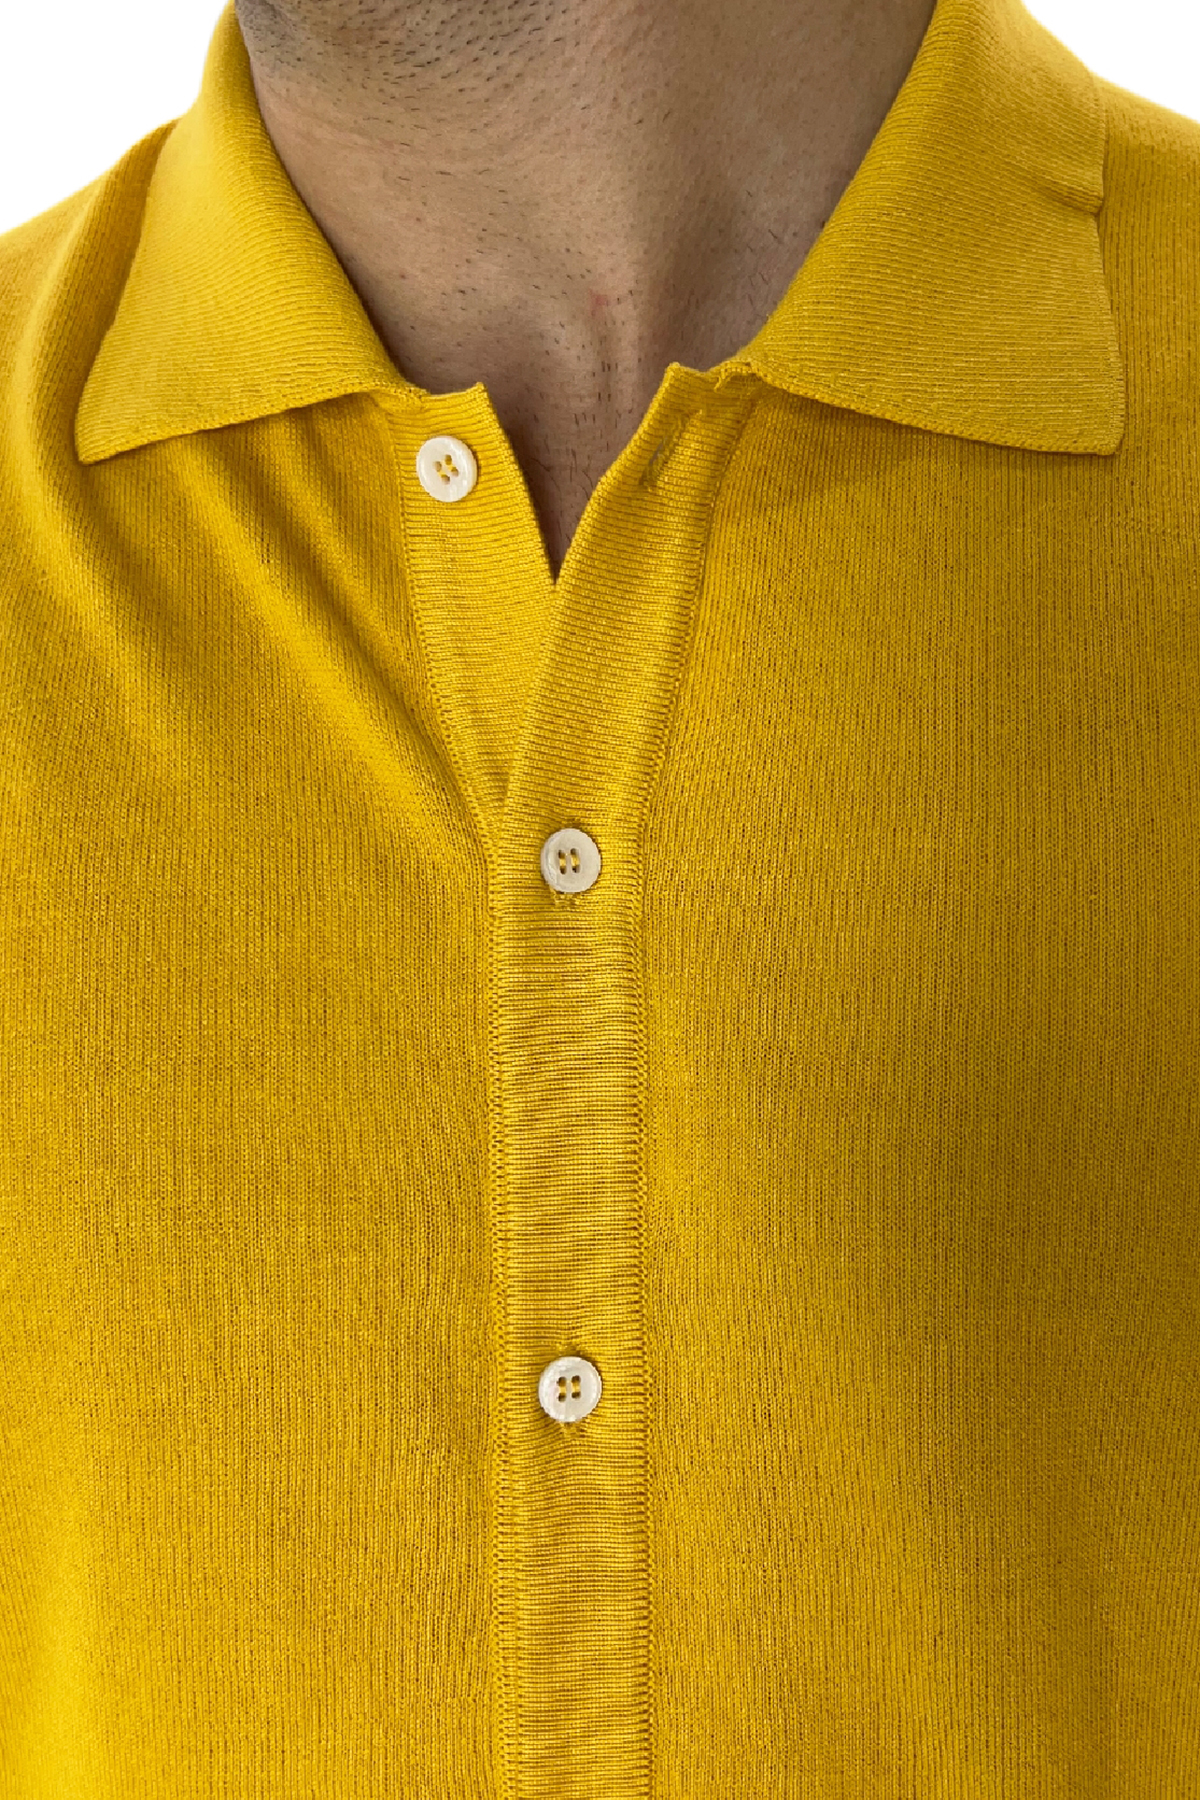 Polo da uomo Mezza manica in cotone 100% Chiusura camicia Made in Italy